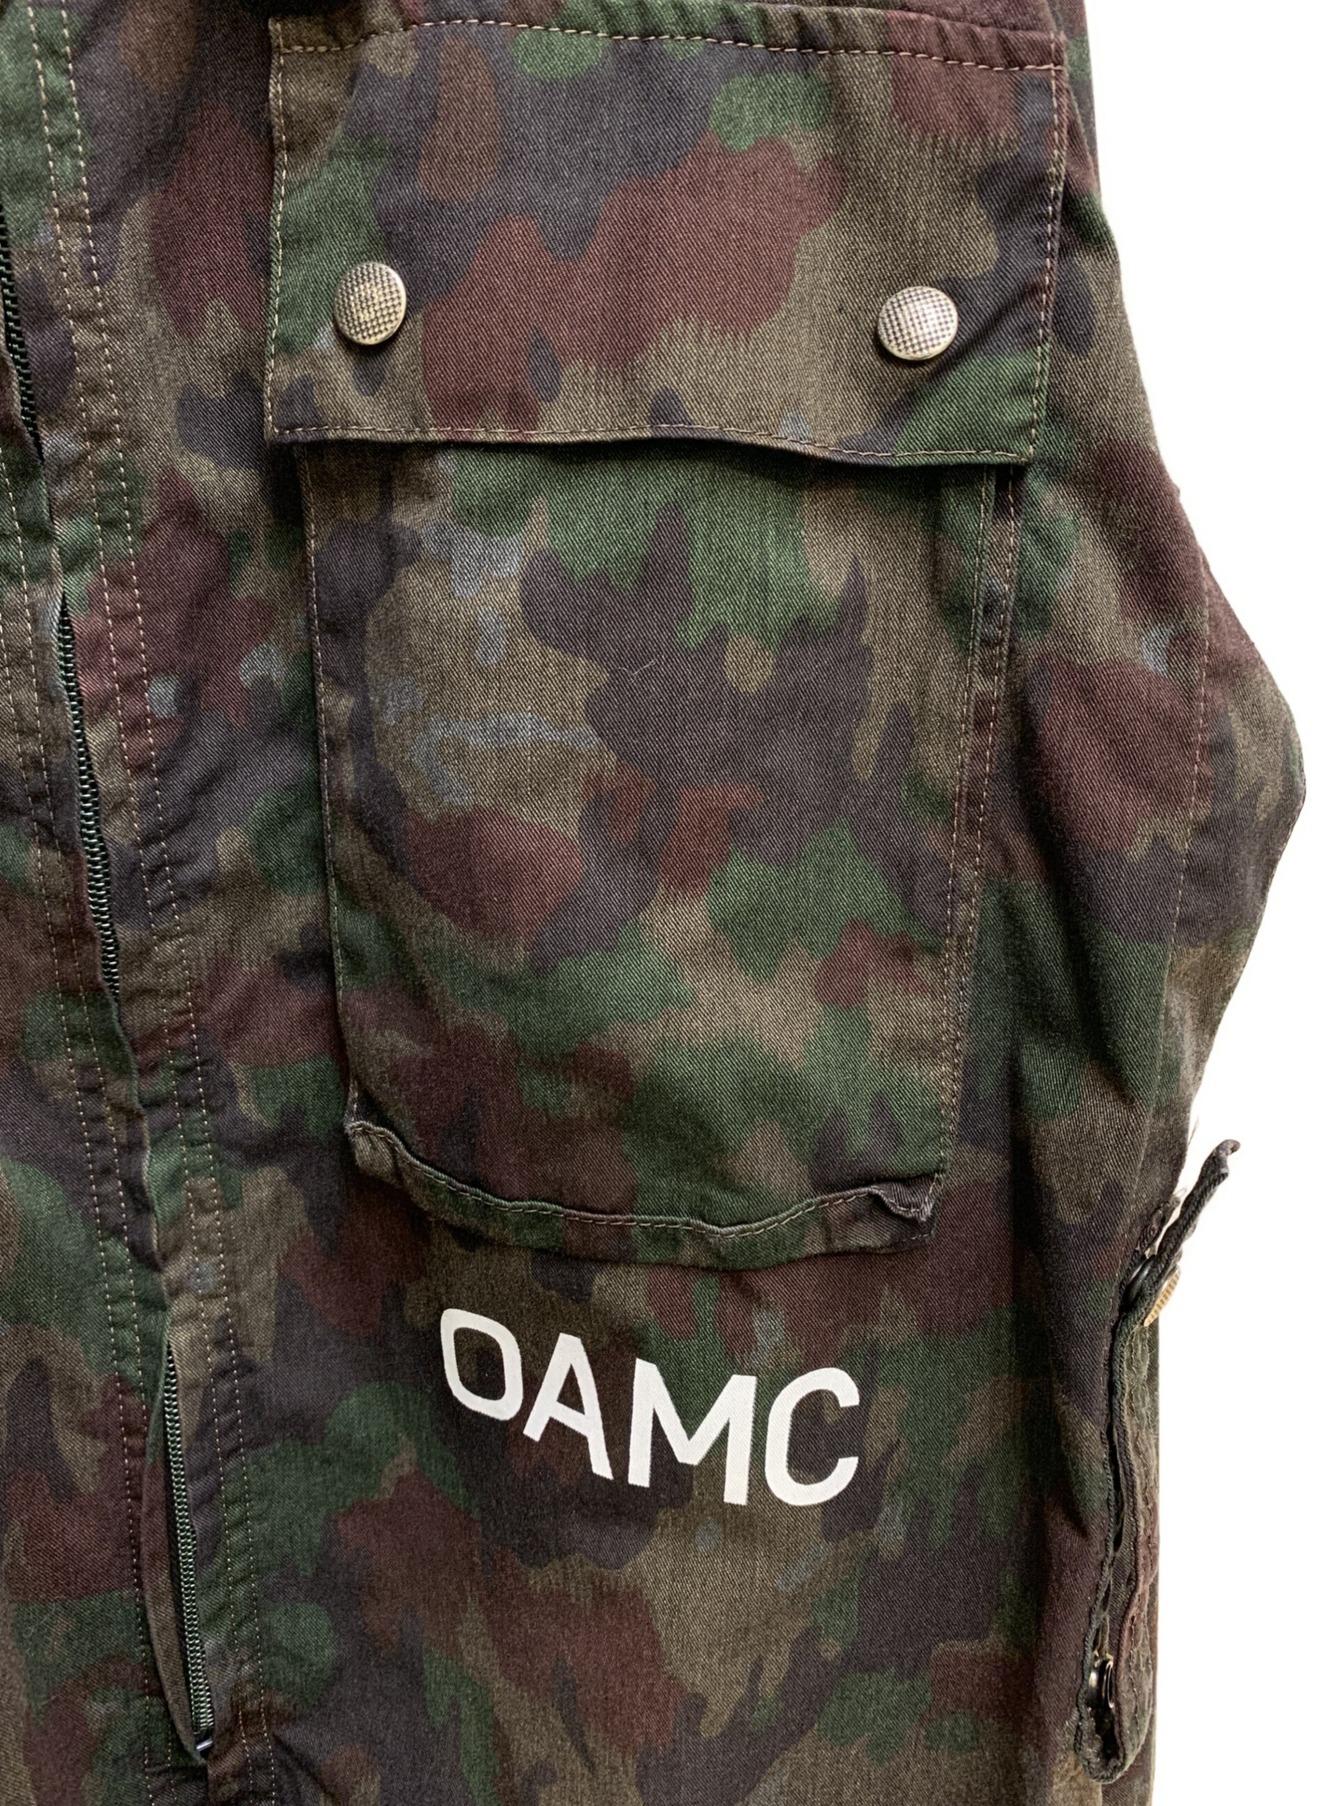 OAMC (オーエーエムシー) PEOPLE FOR PEACE ブラウン×ボルドー サイズ:L